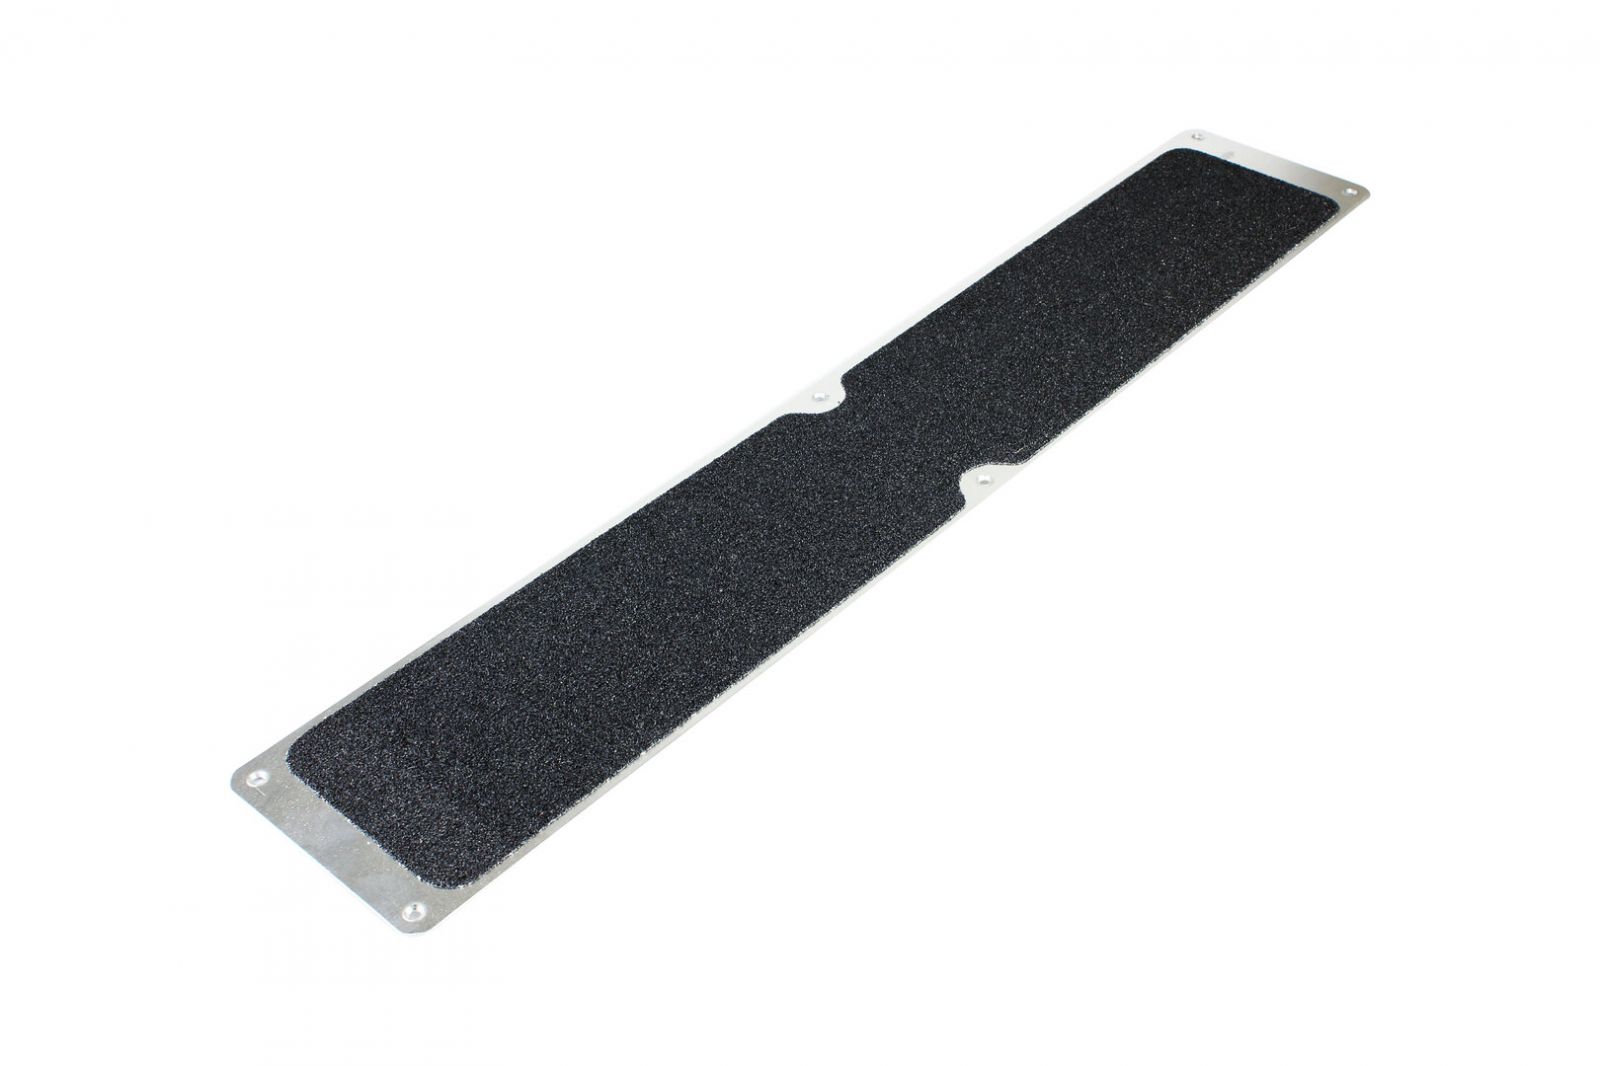 Hnědá náhradní protiskluzová páska pro hliníkové nášlapy FLOMA Standard - délka 63,5 cm, šířka 11,5 cm, tloušťka 0,7 mm